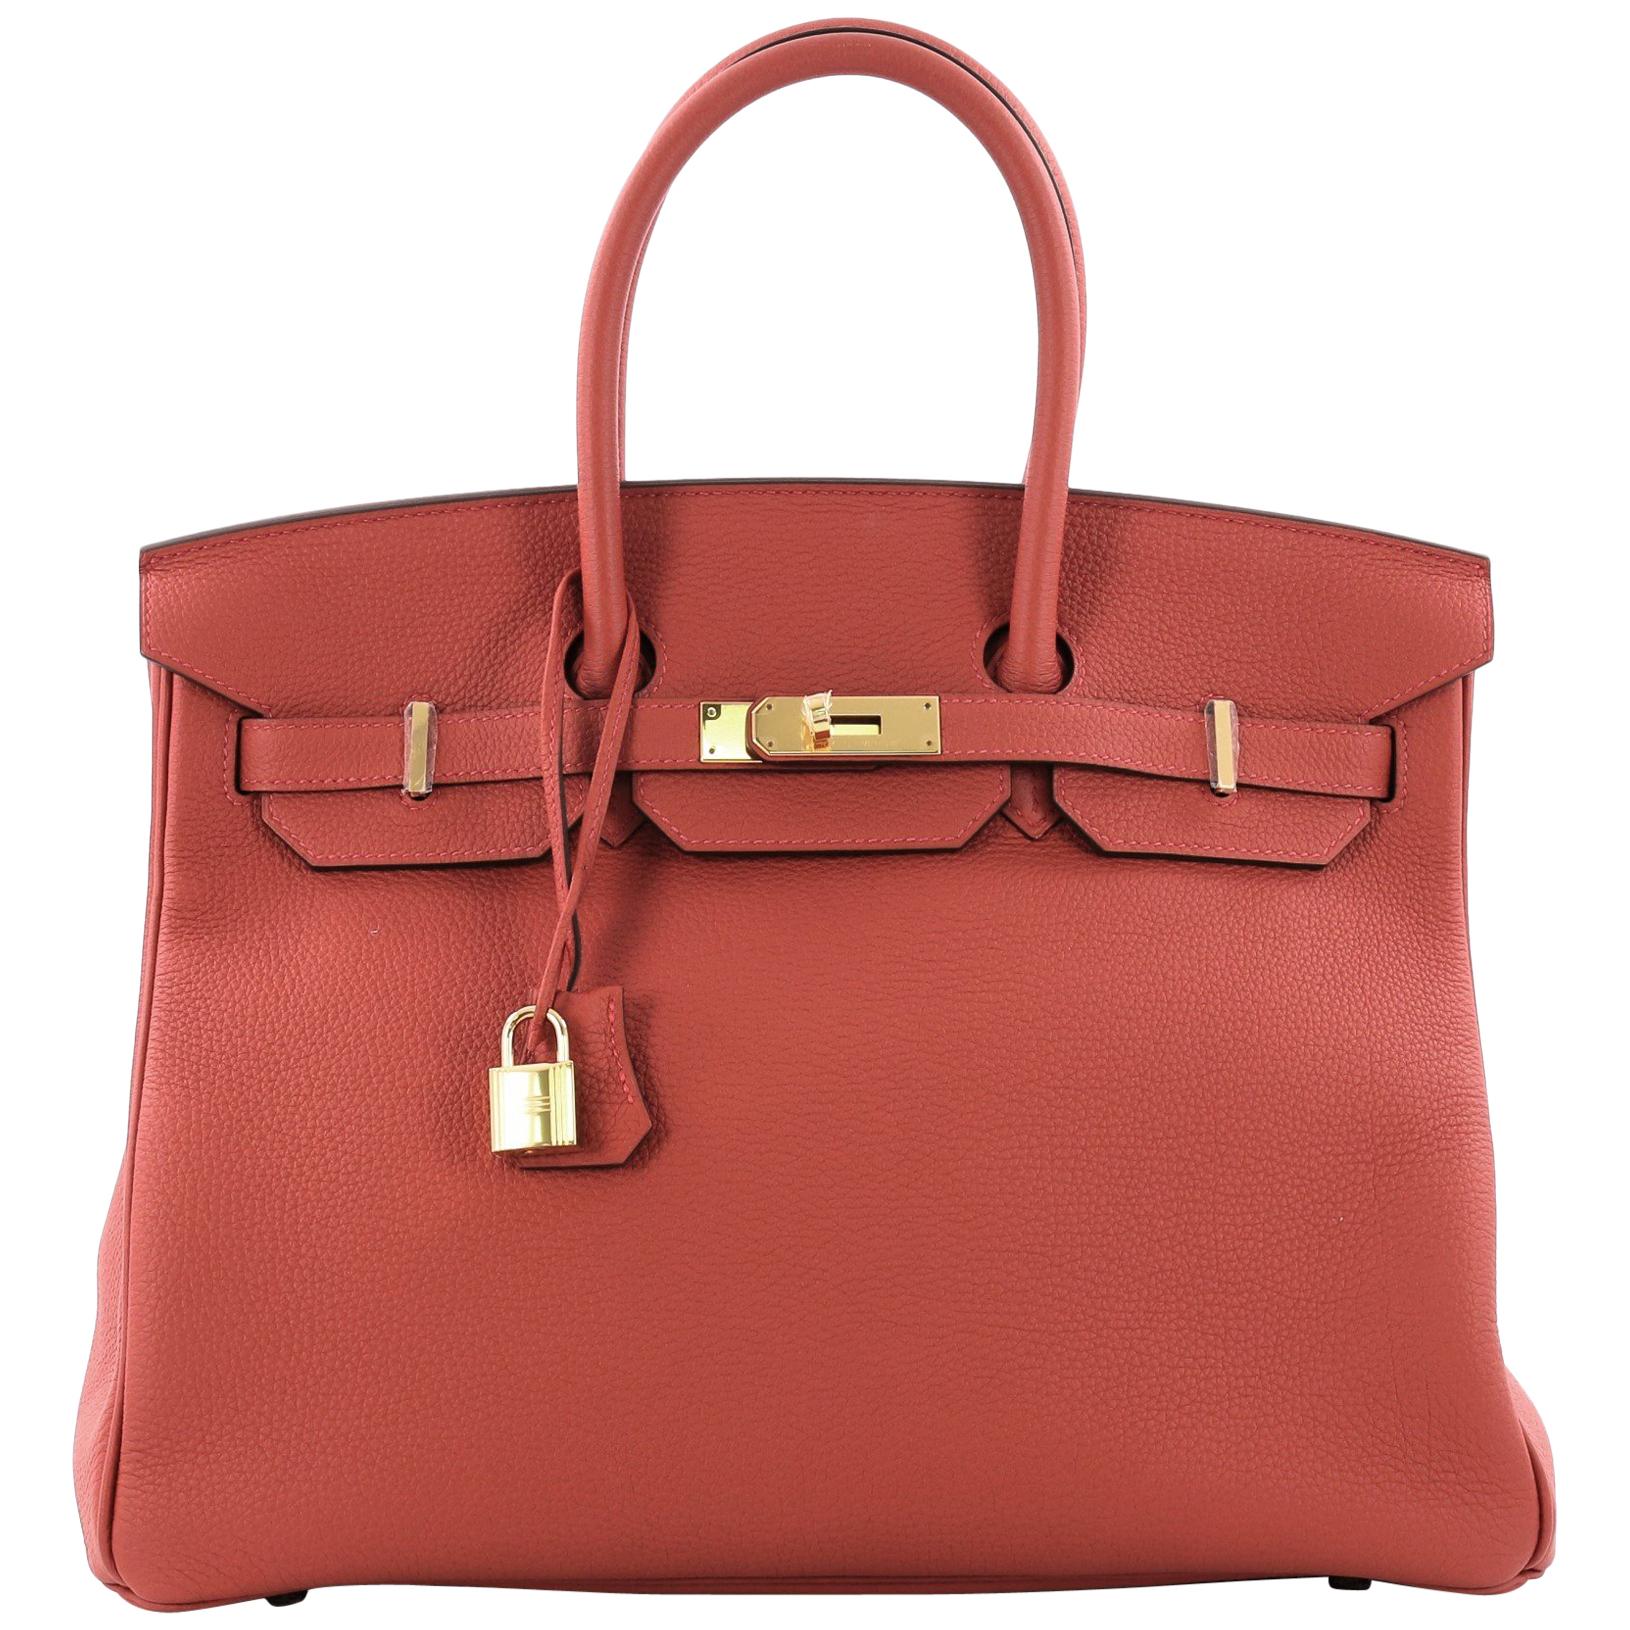  Hermes Birkin Handbag Rouge Tomate Togo with Gold Hardware 35